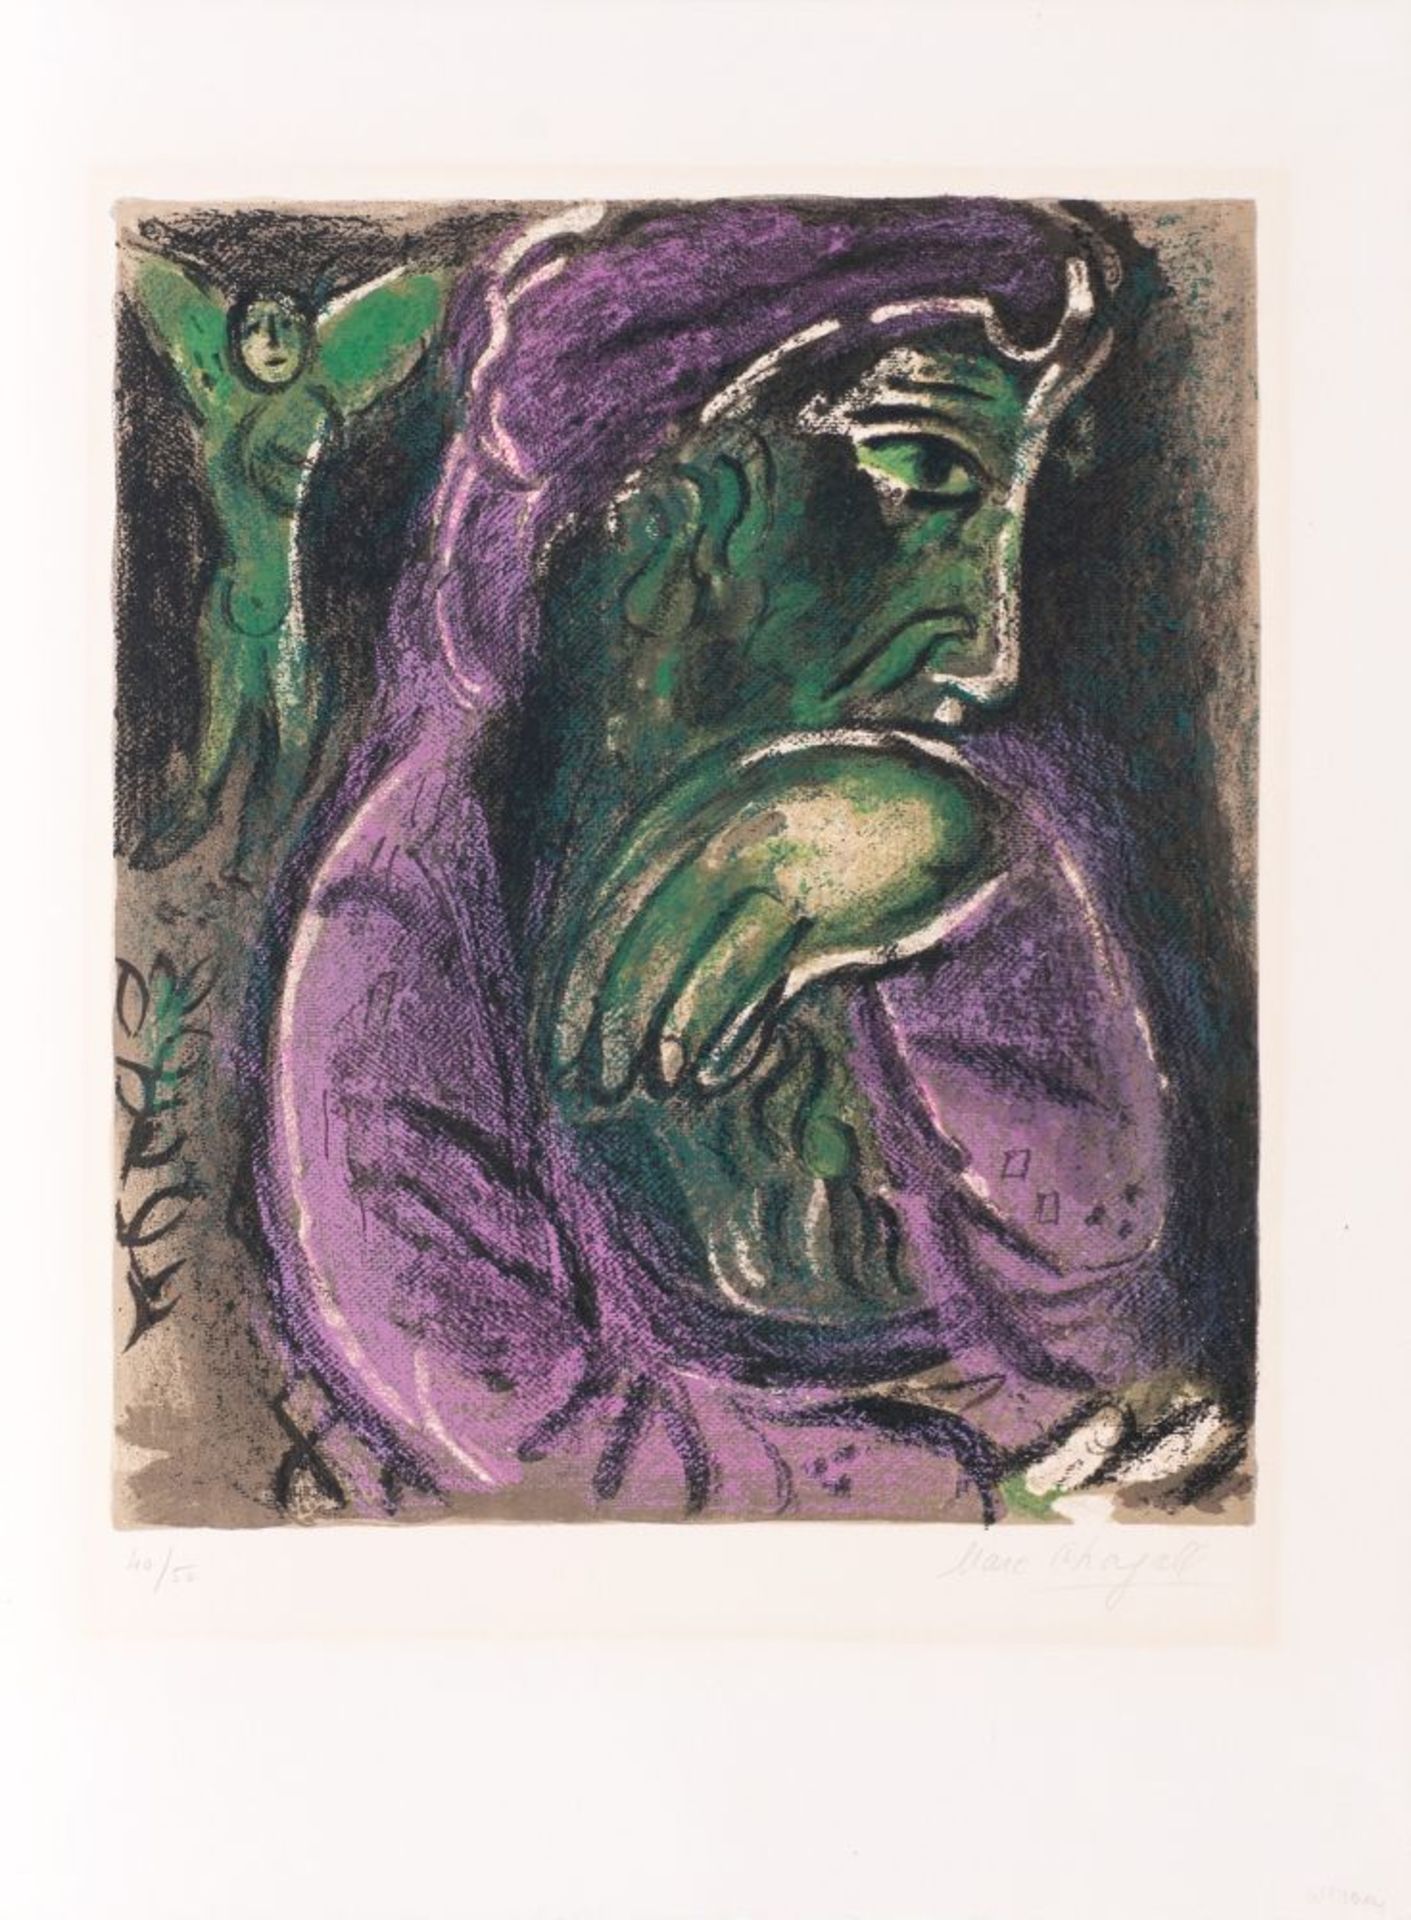 Marc Chagall (Witebsk 1887 - Paris 1985). Hiob in der Verzweiflung.